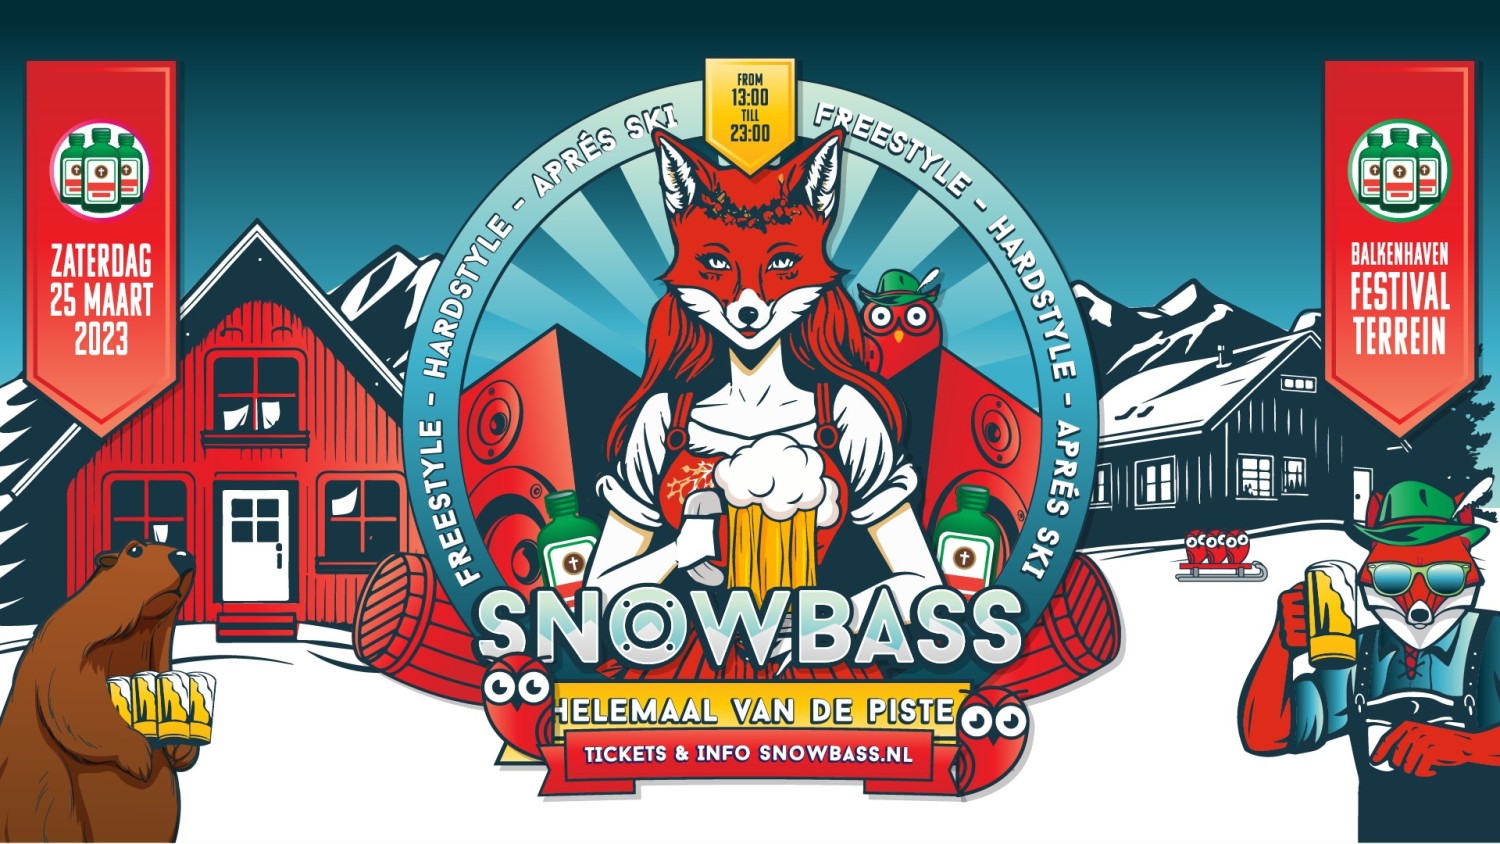 Party nieuws: Helemaal van de piste tijdens Snowbass Festival 2023